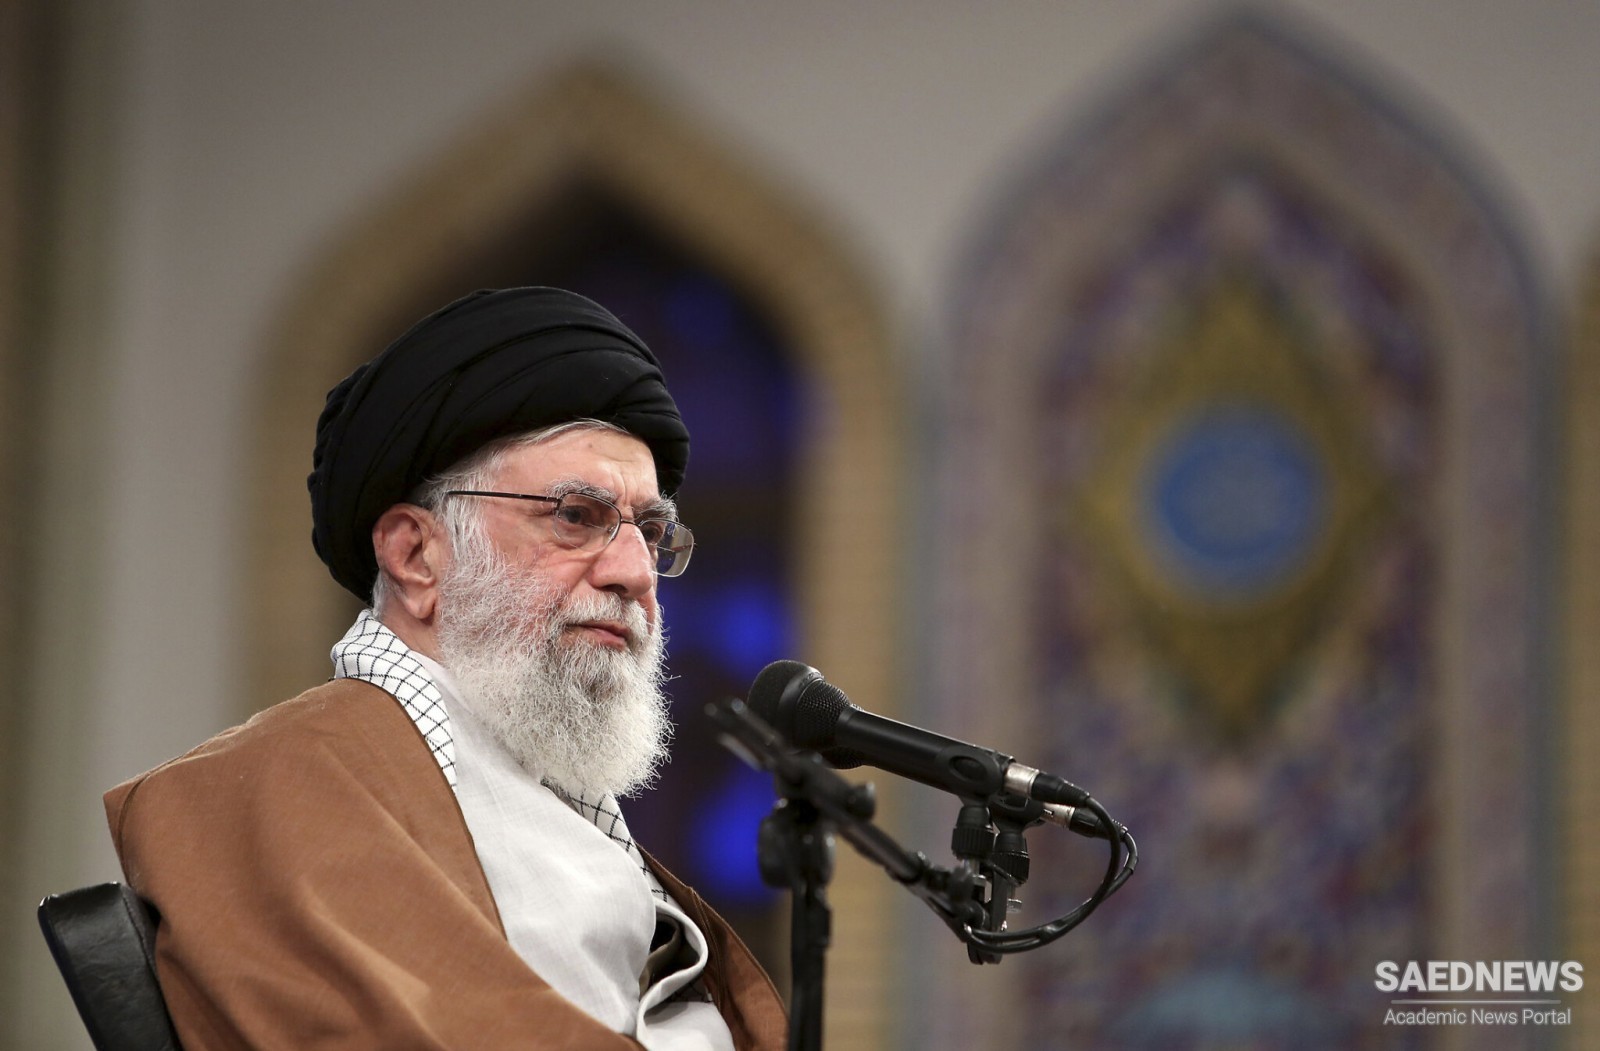 इस्लामी गणतंत्र ईरान के सर्वोच्च नेता ने फ़िलिस्तीनी नेताओं के पत्रों का उत्तर दिया